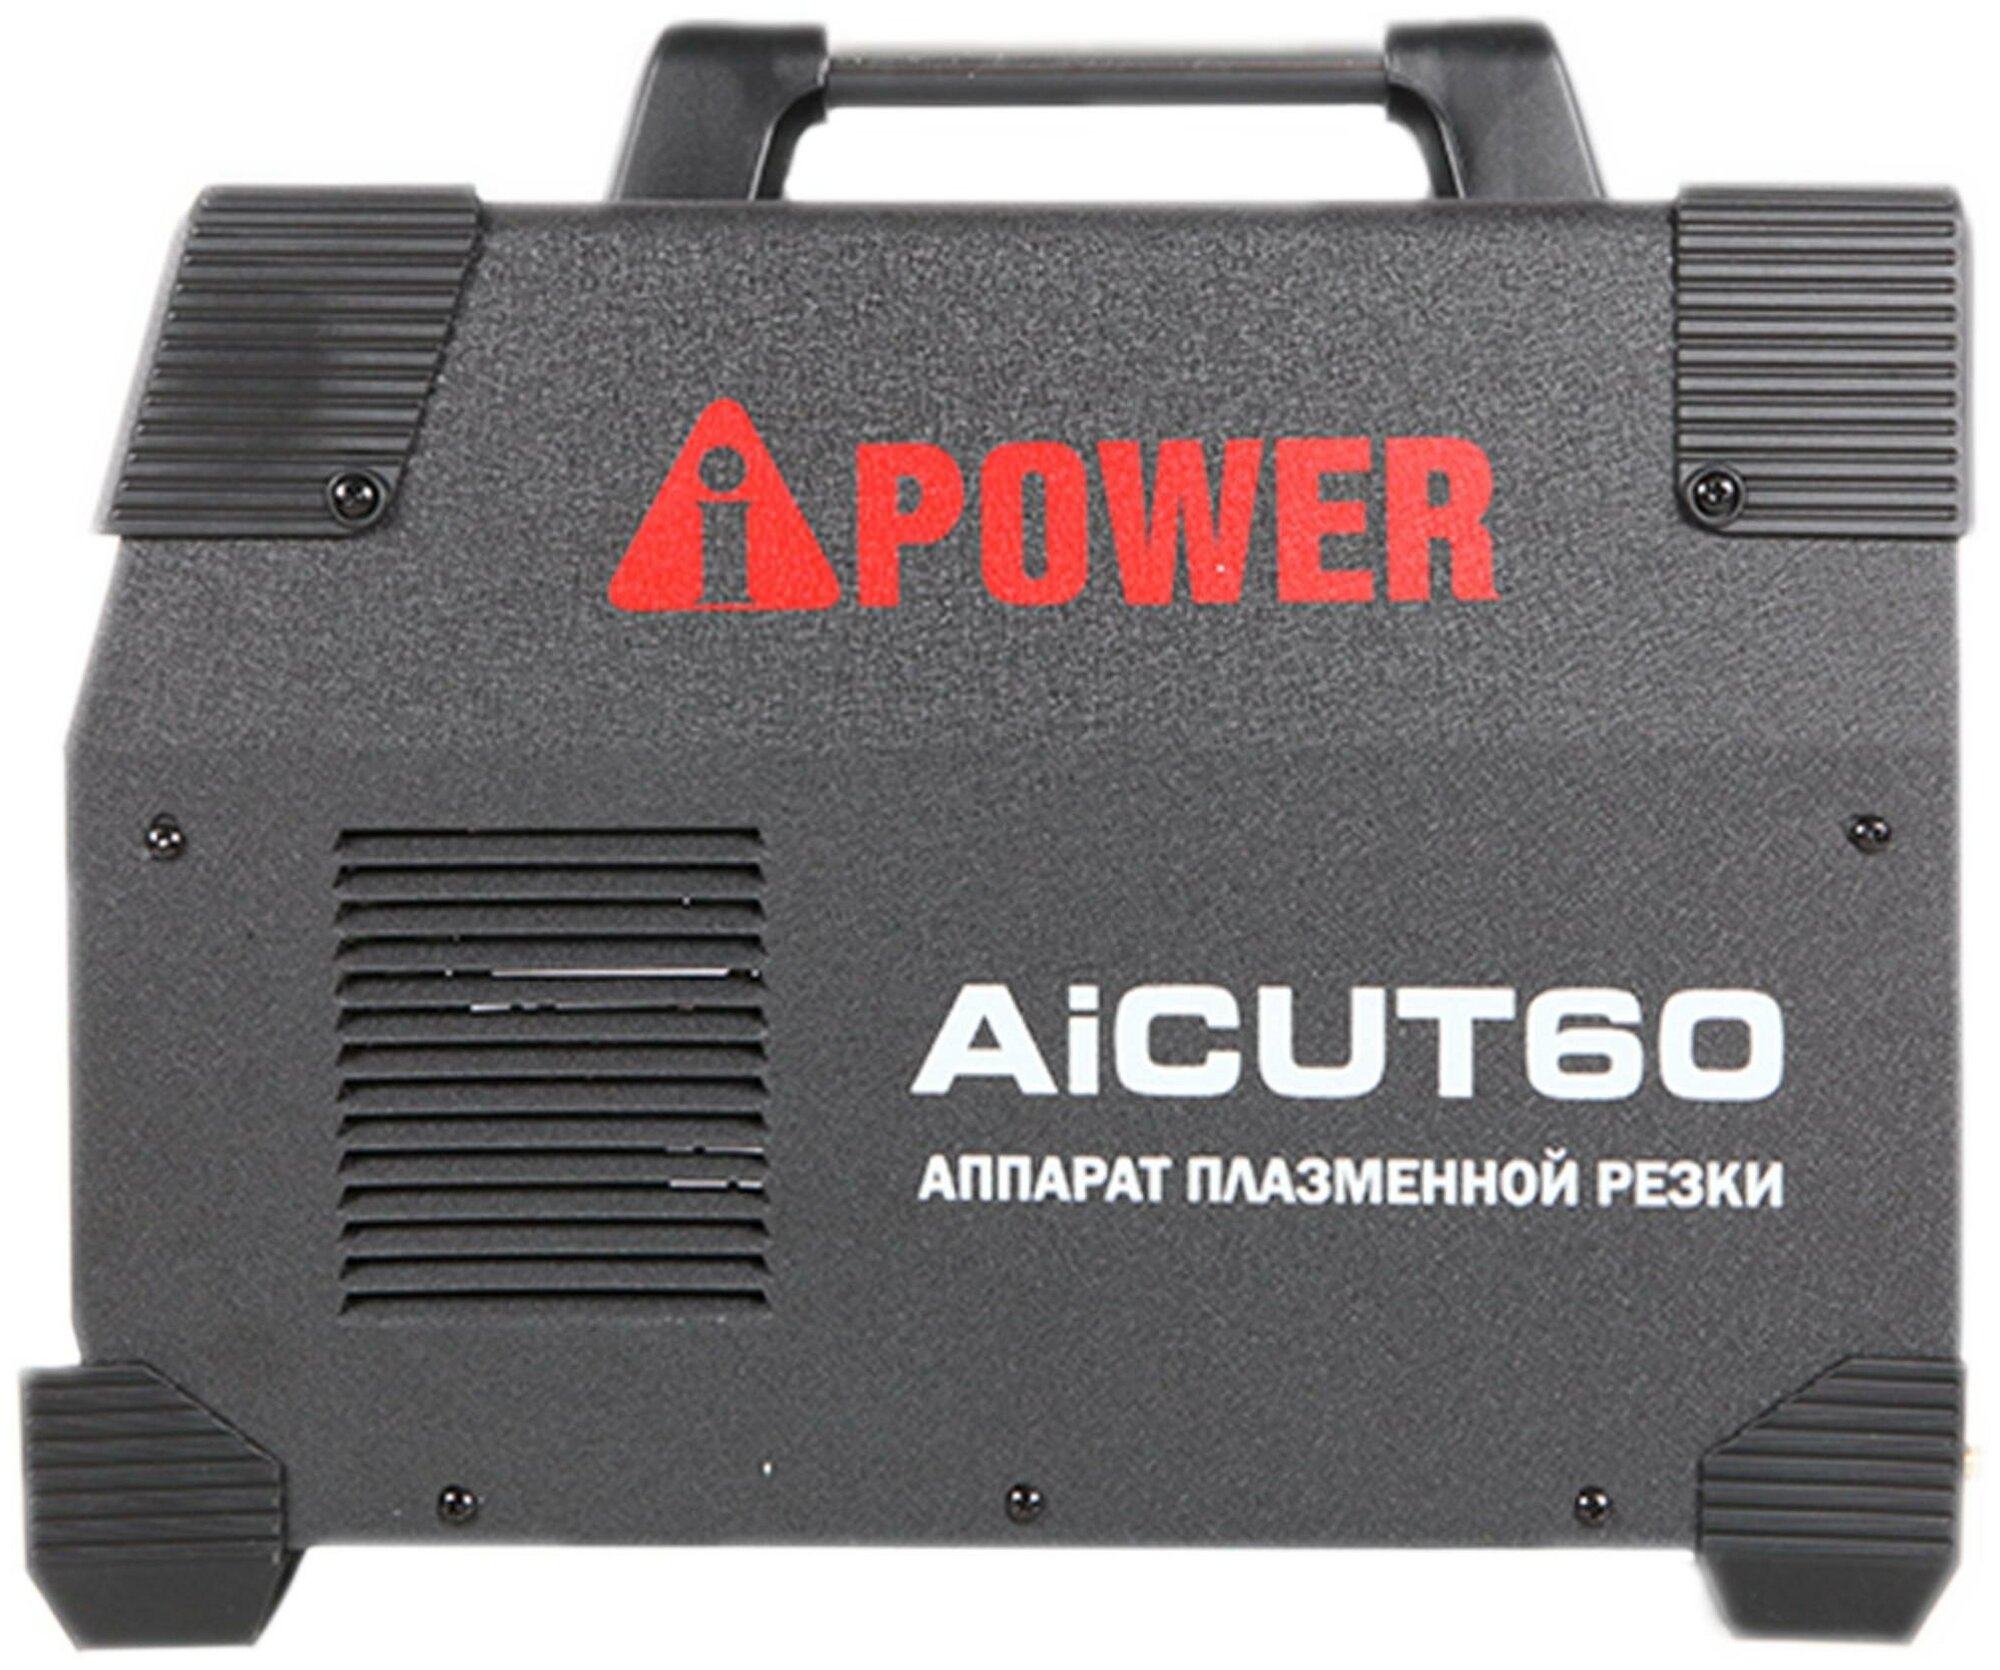    A-iPower AiCUT 60